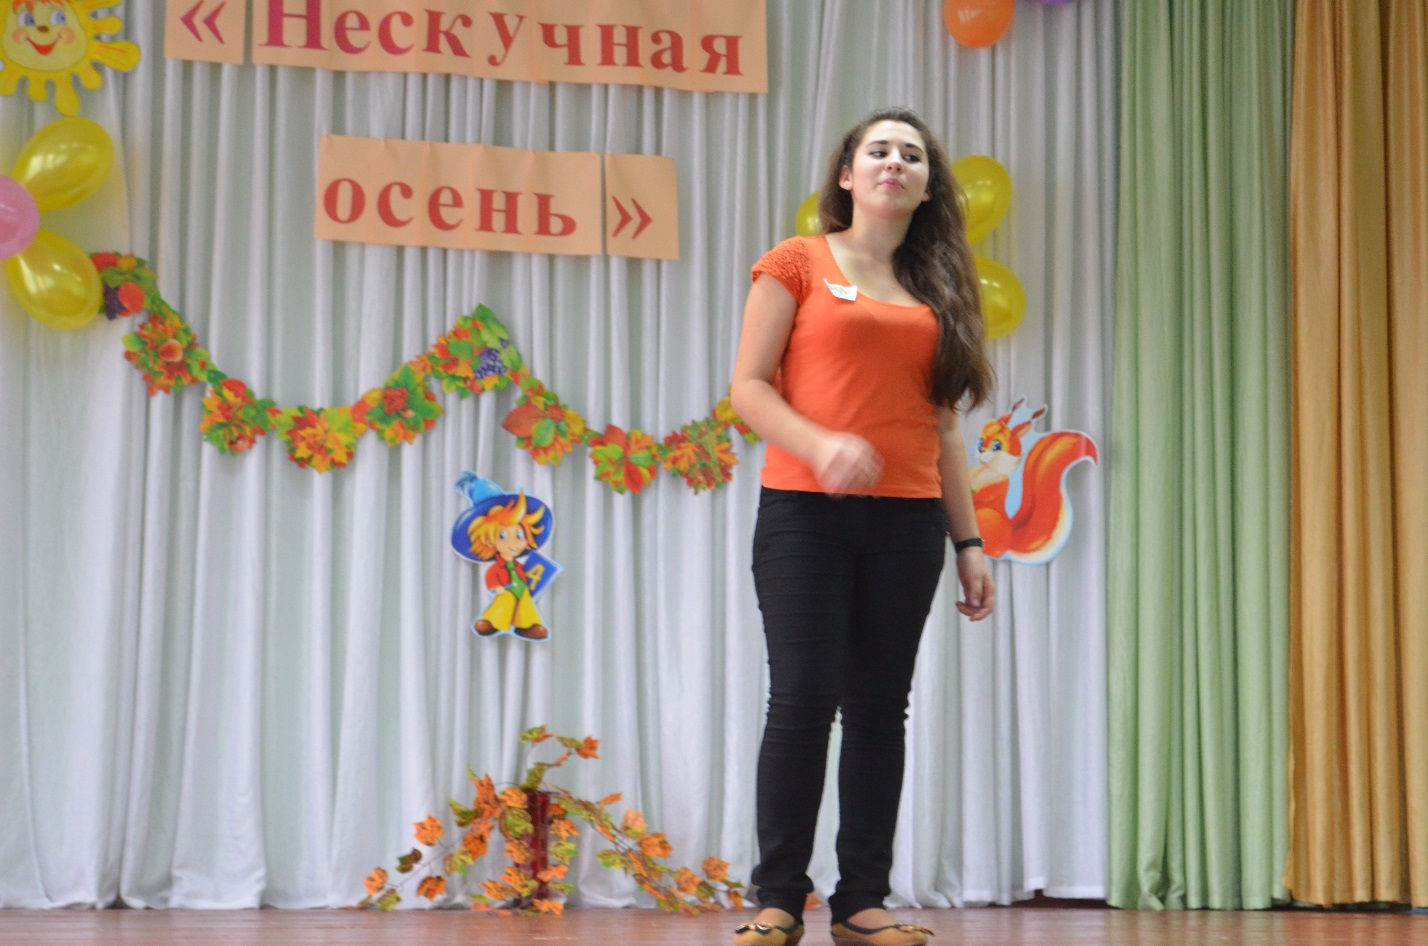 Сценарий внеклассного мероприятия к Неделе русского языка и литературы «Нескучная осень»